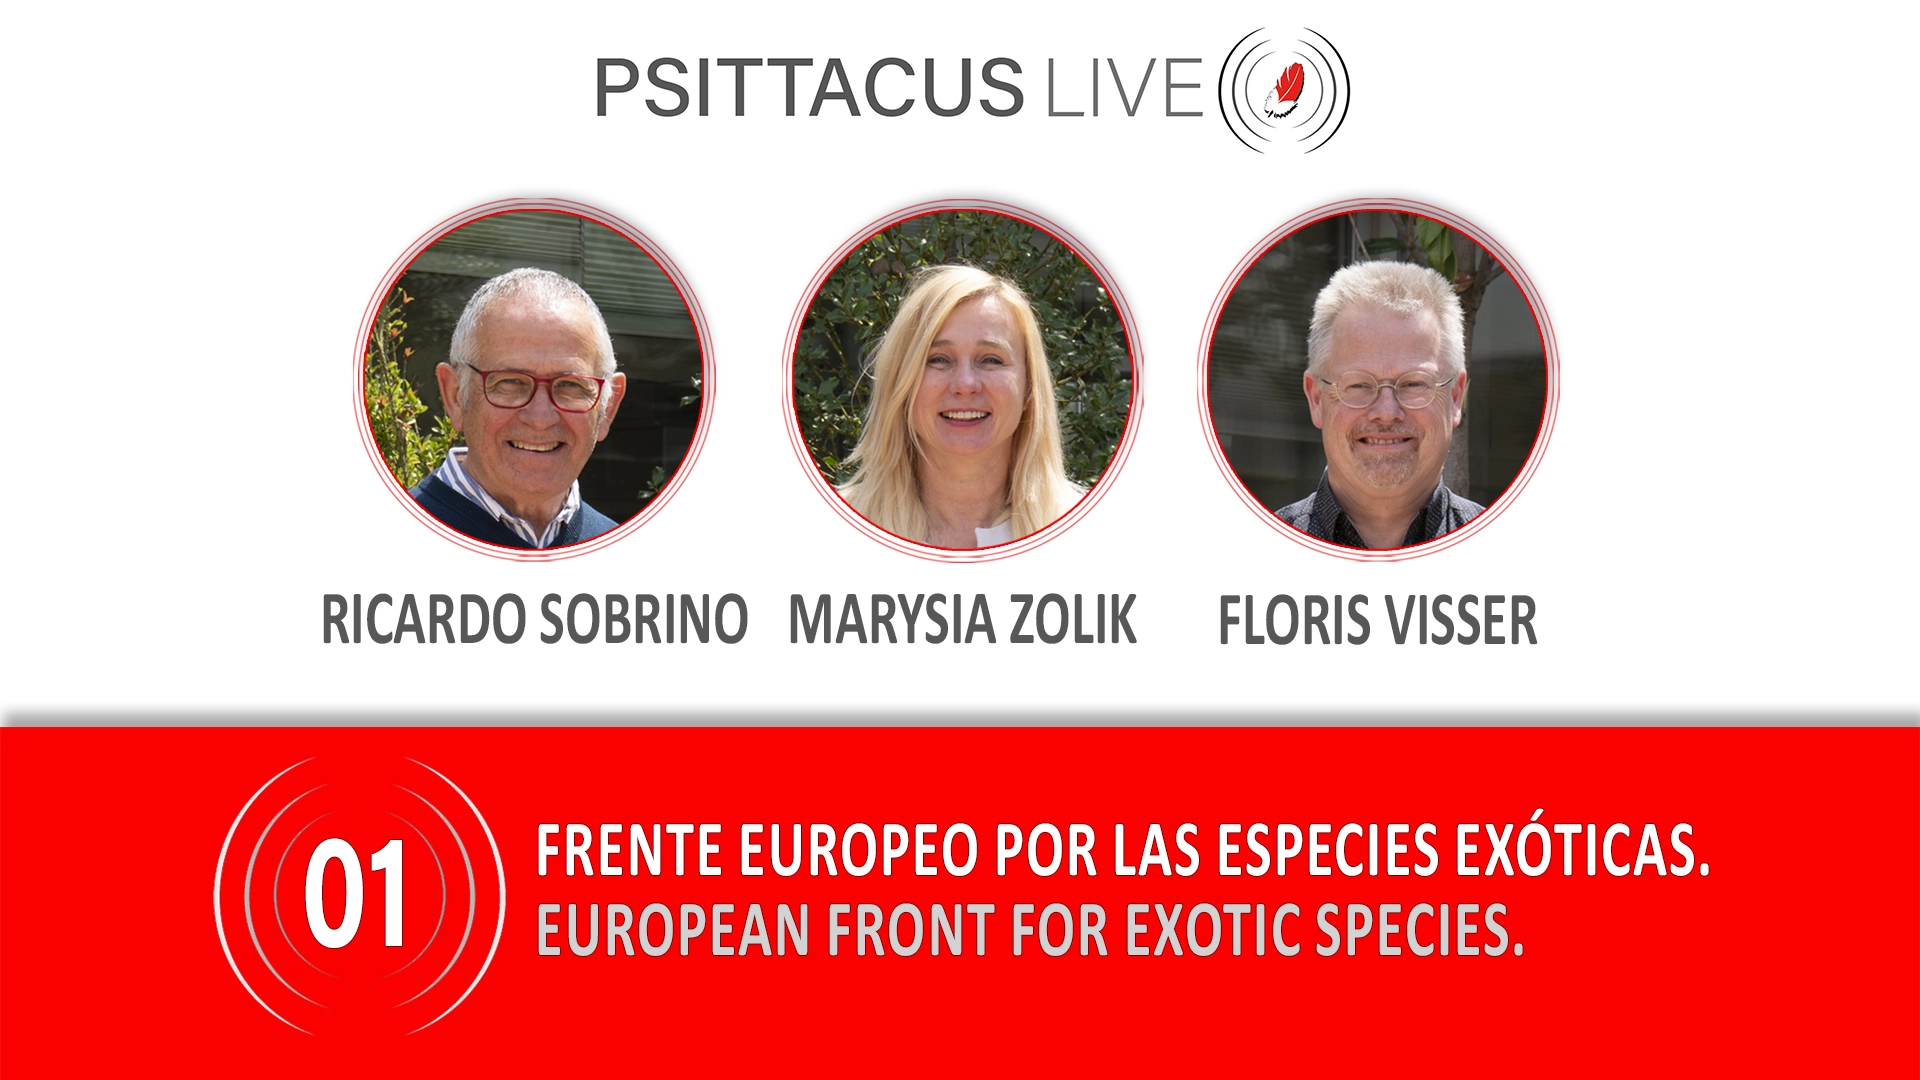 La Fundación Psittacus activa PSITTACUS LIVE